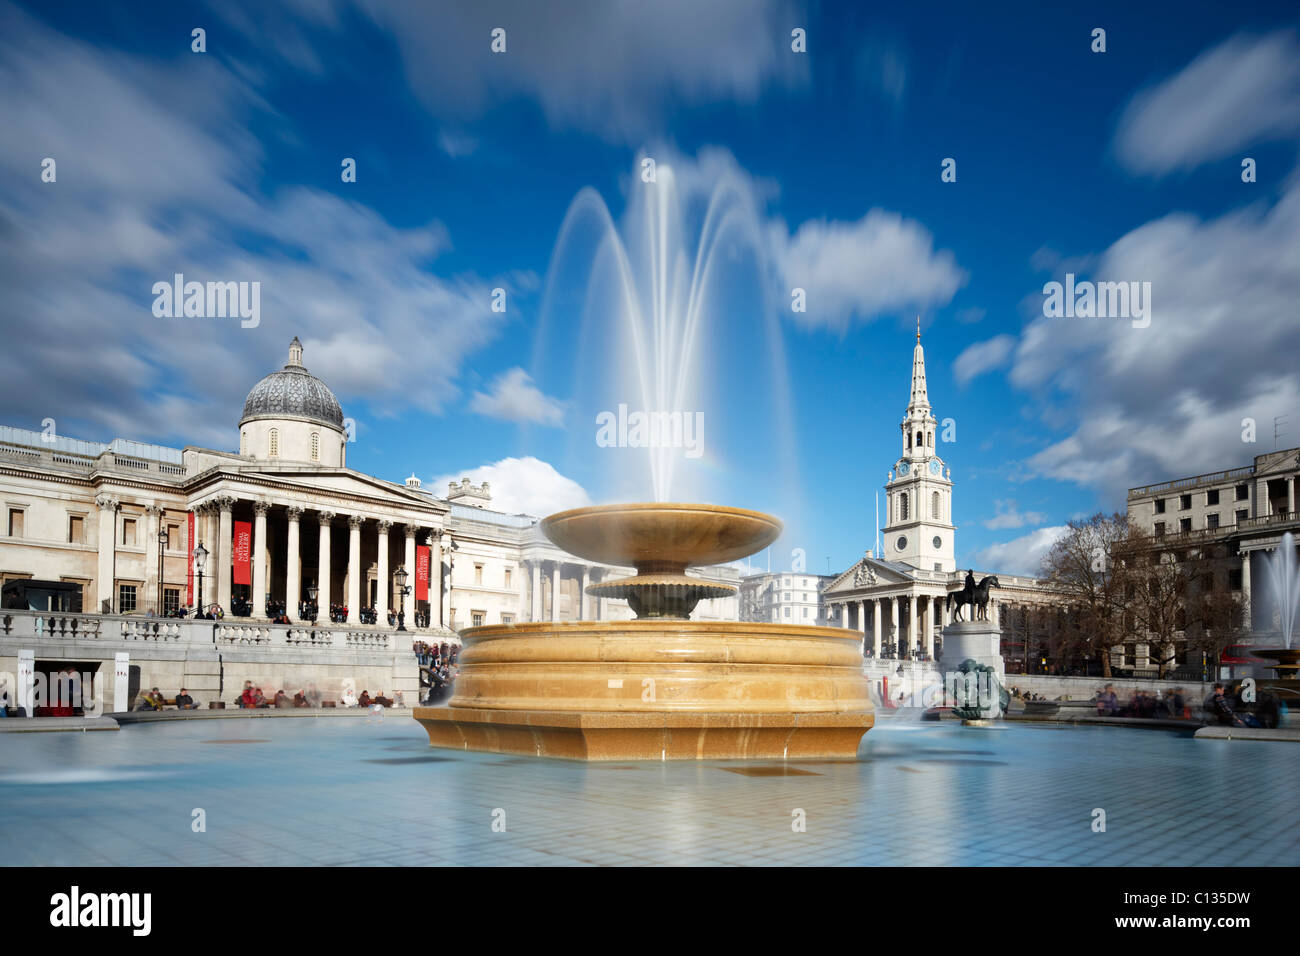 Trafalgar Square - Zentrum von London. Lange Exposition Rendering Bewegung in beiden Brunnen und Bewölkung. Stockfoto